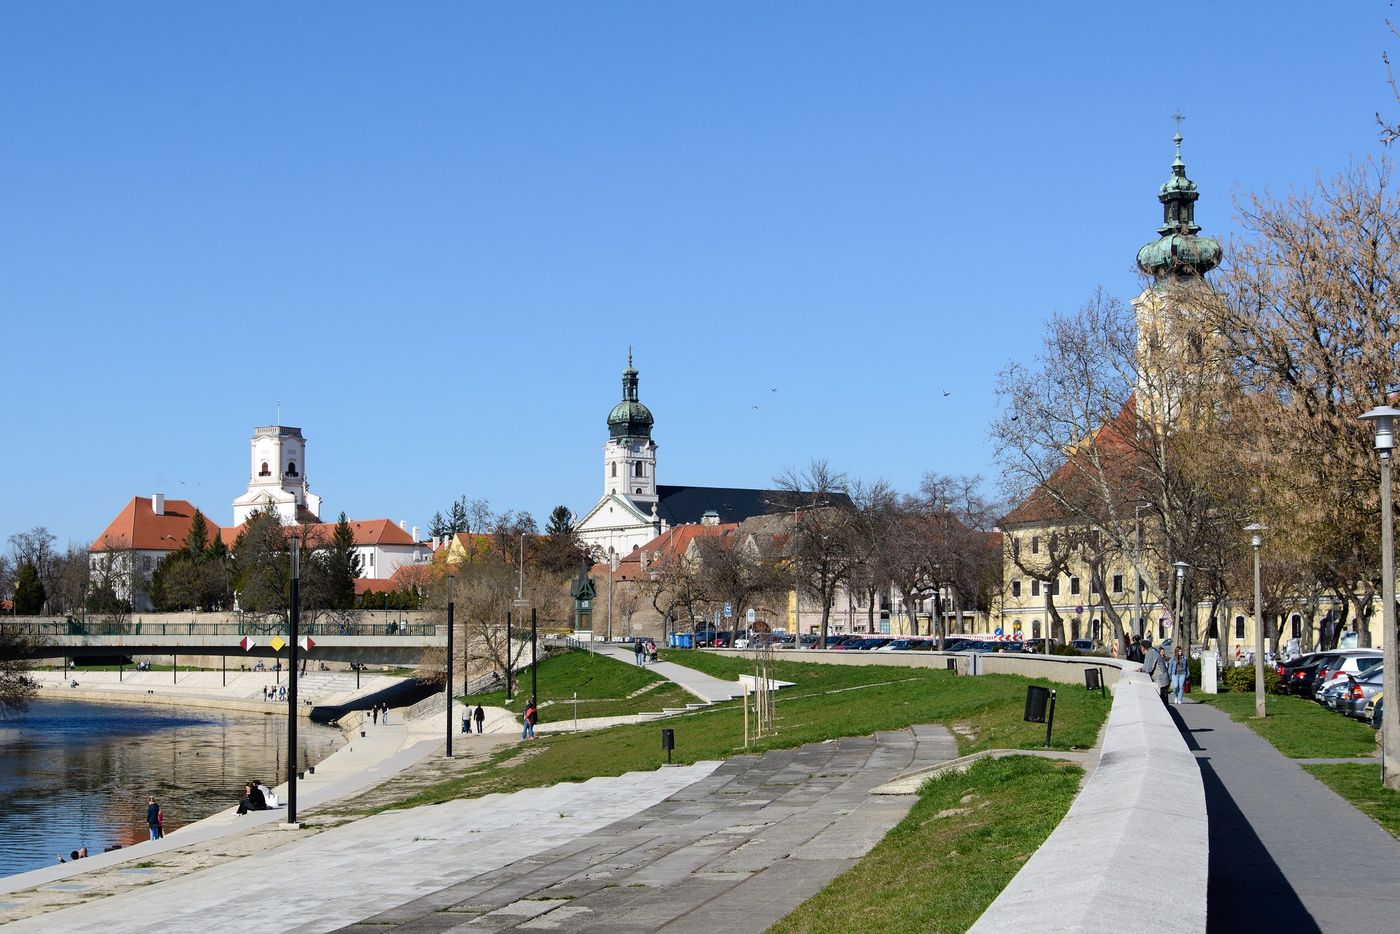 Győr: Tam, gdzie historia spotyka się z nowoczesnością